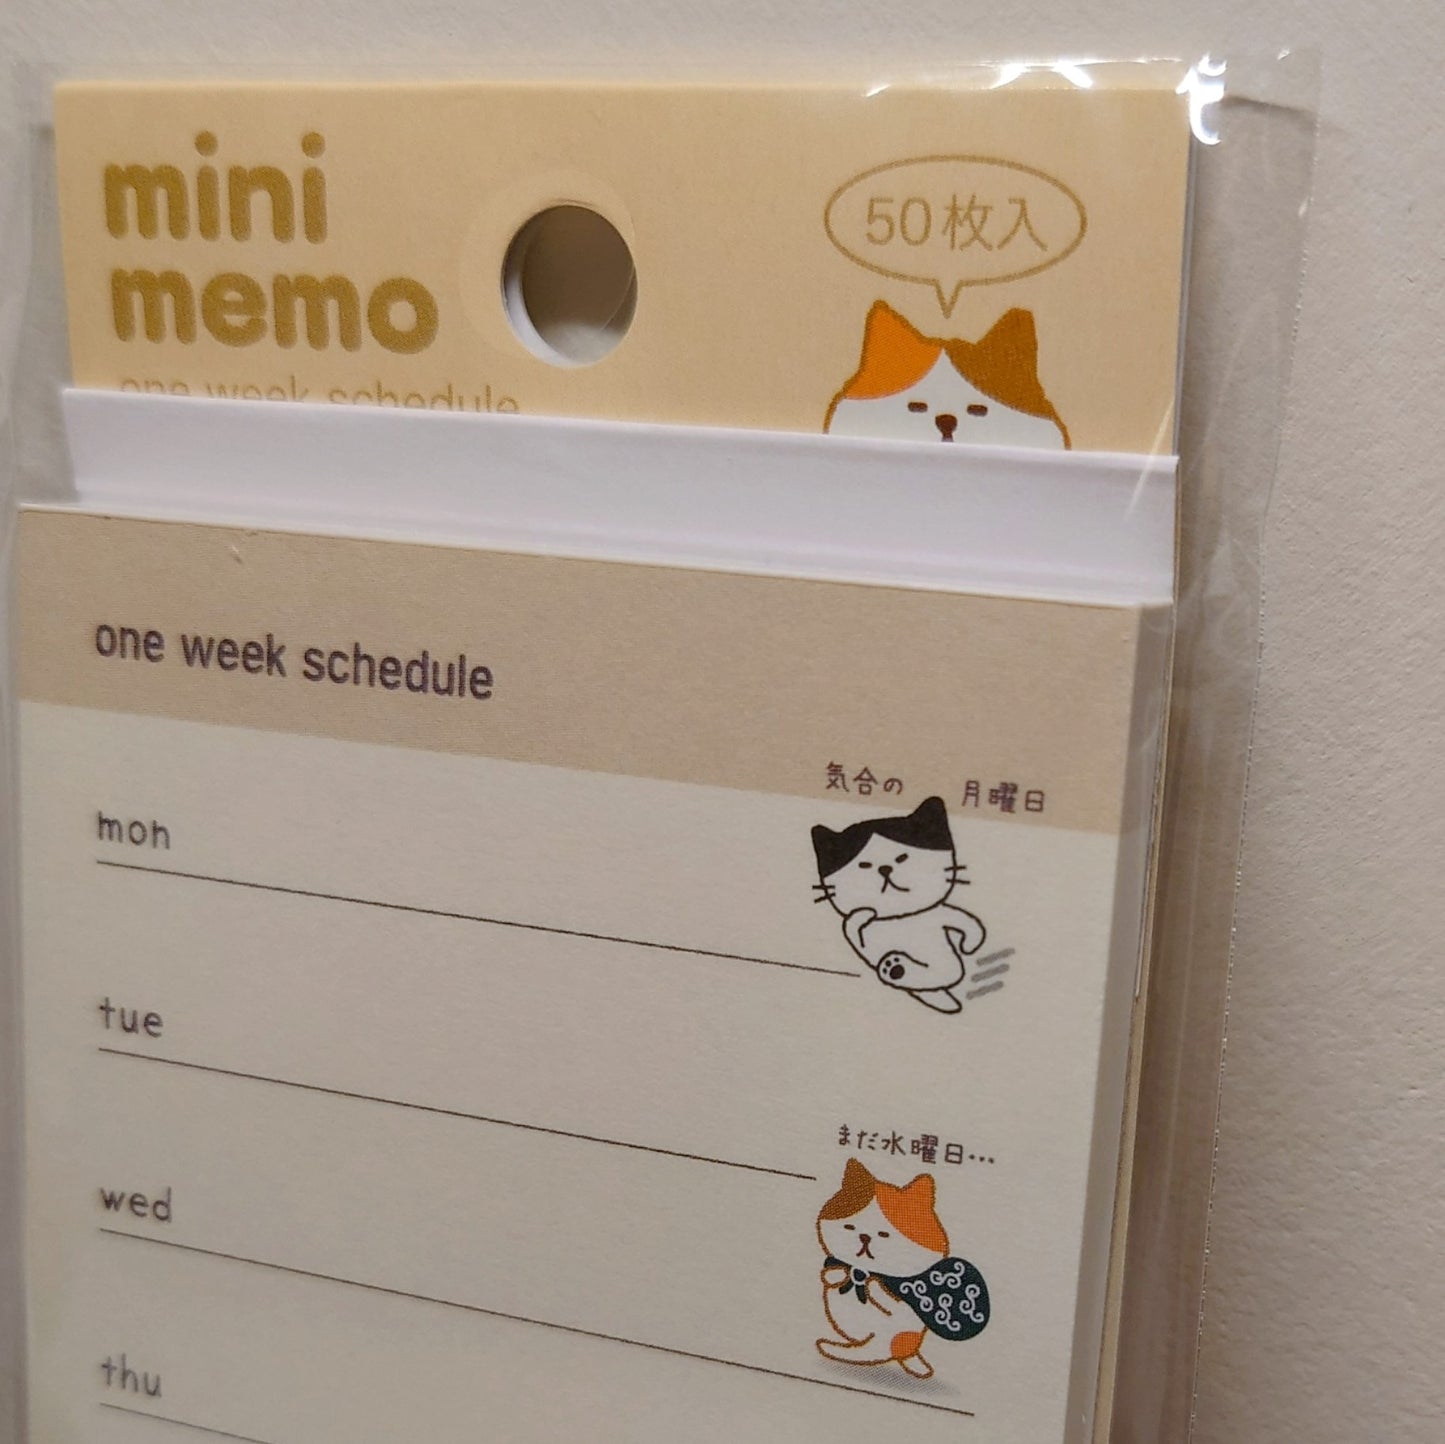 Pinebook mini memo 貓